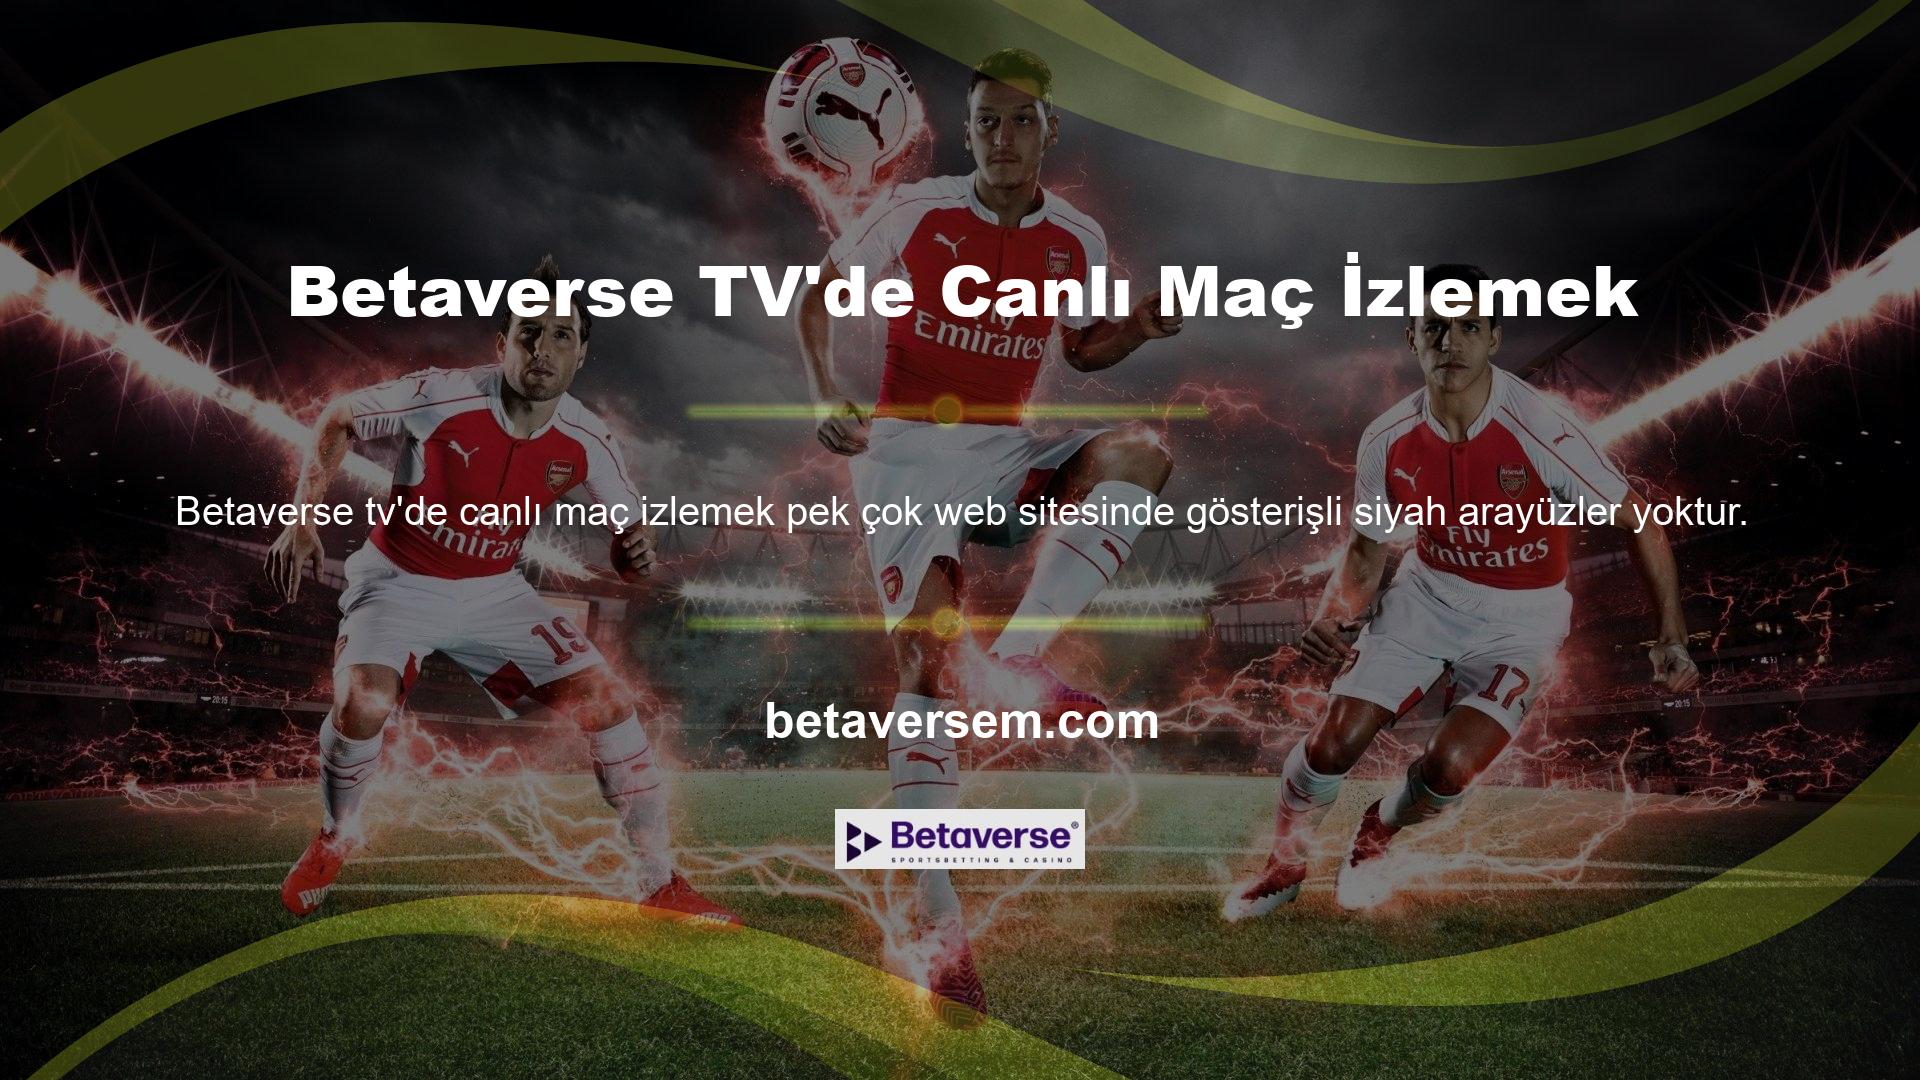 Betaverse TV kurulduğu günden bu yana canlı yayın özelliğini de üyelerinin hizmetine açmıştır